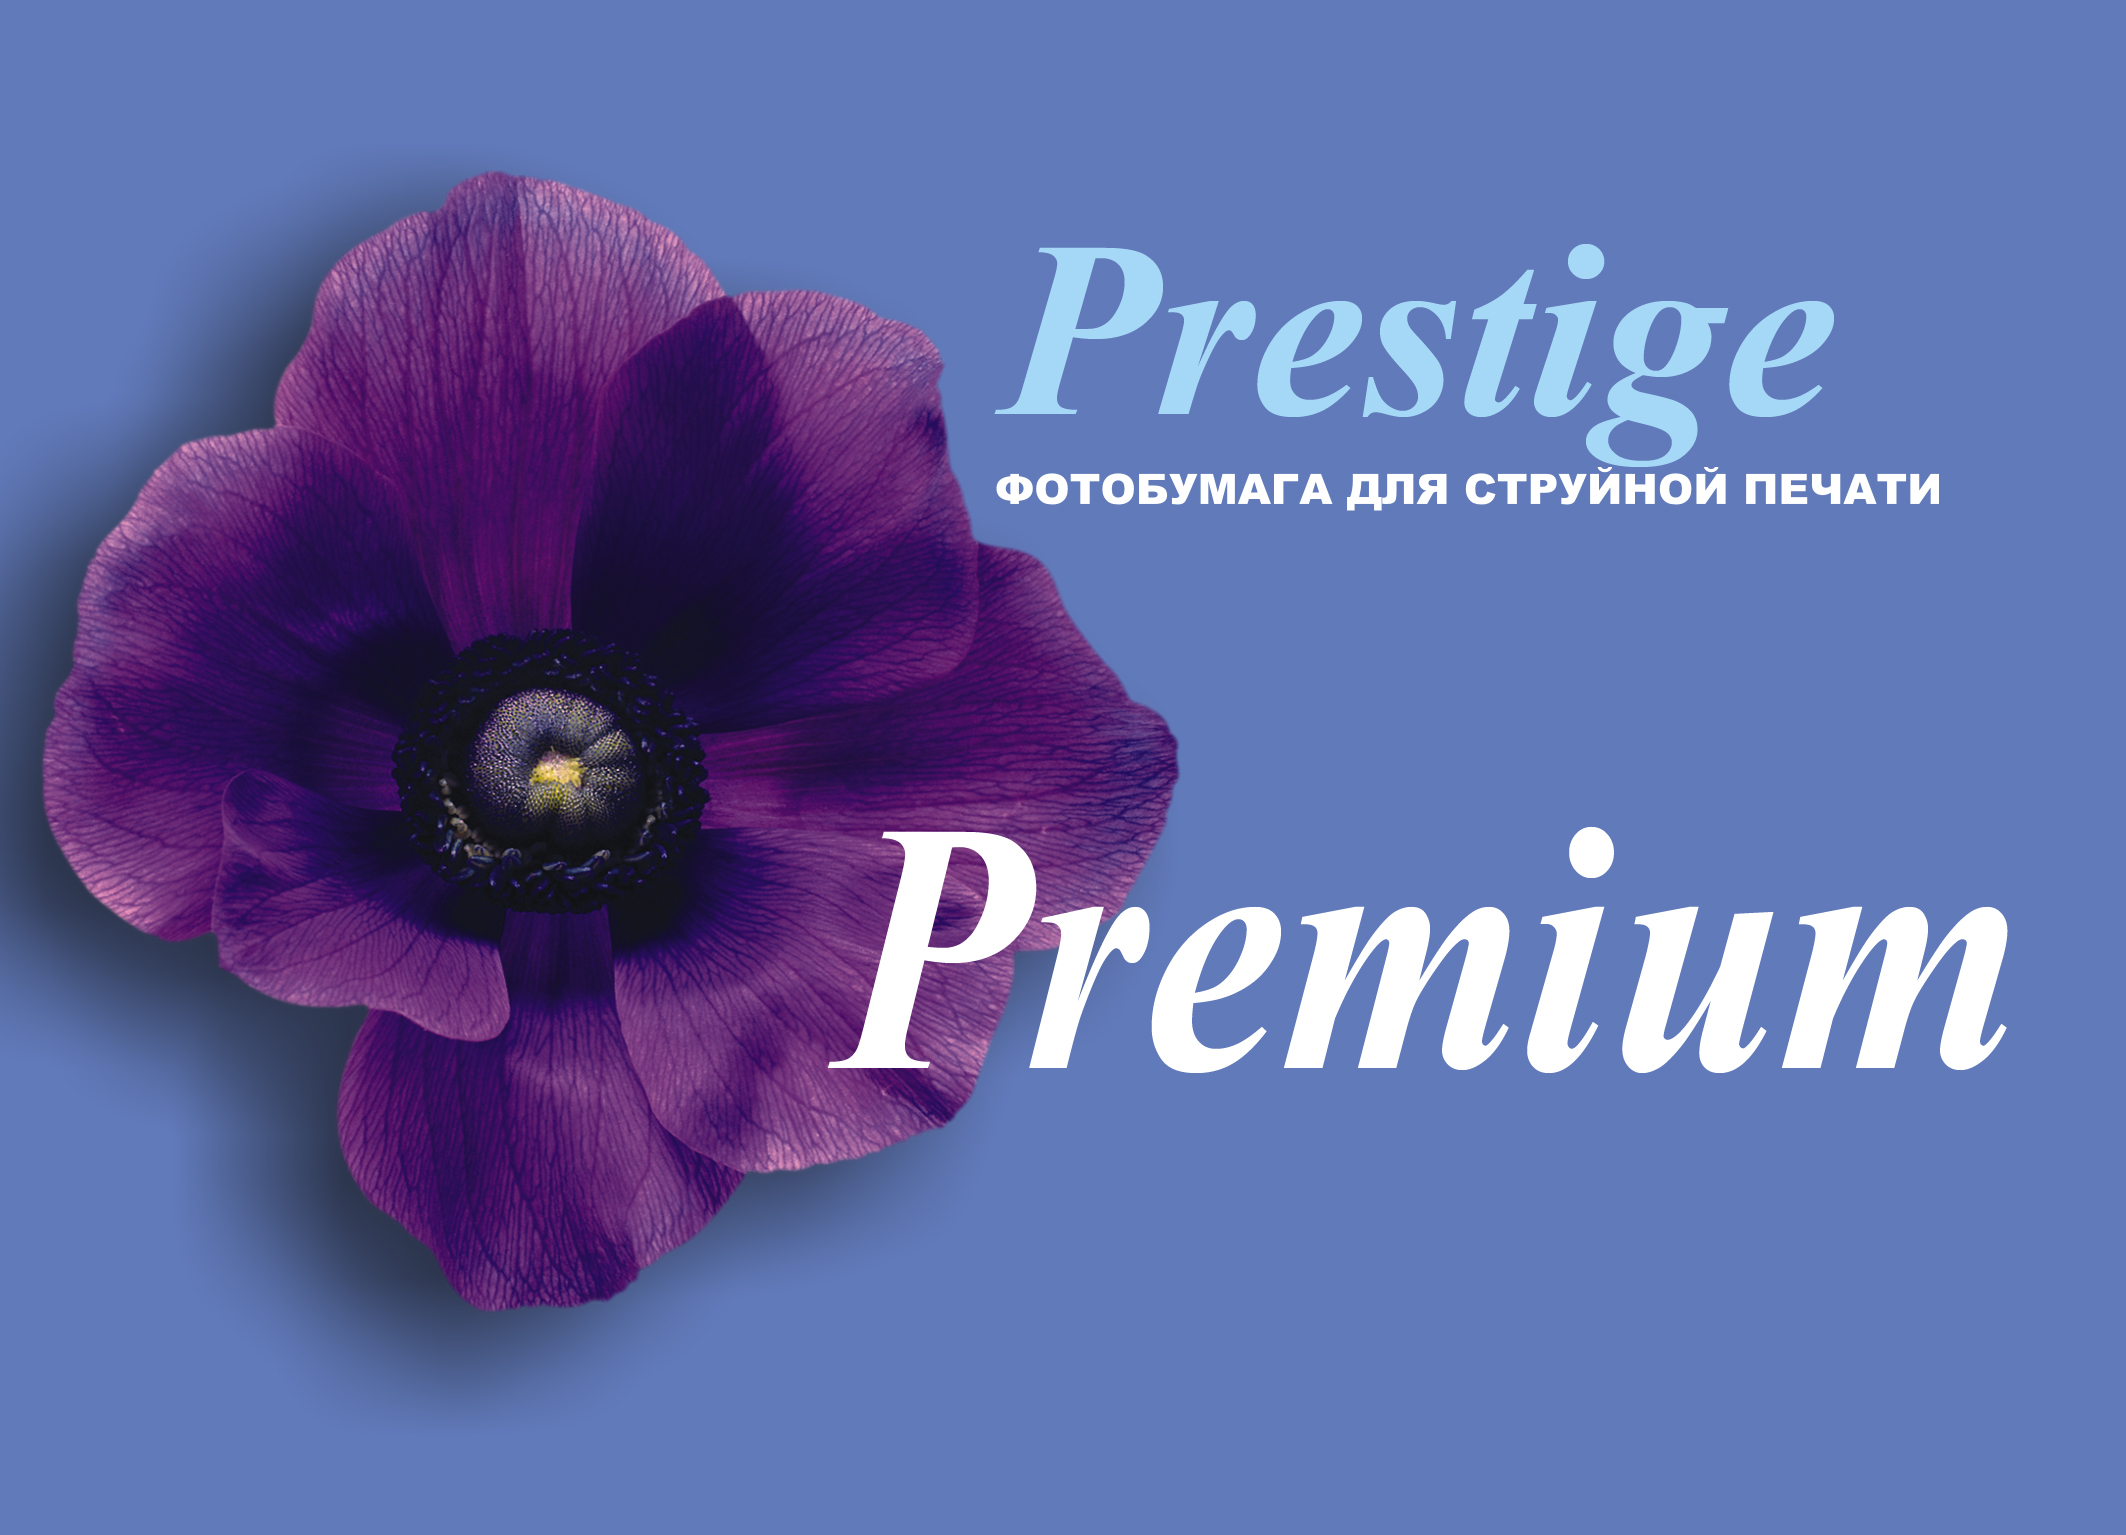 PRESTIGE, фотобумага "Premium"